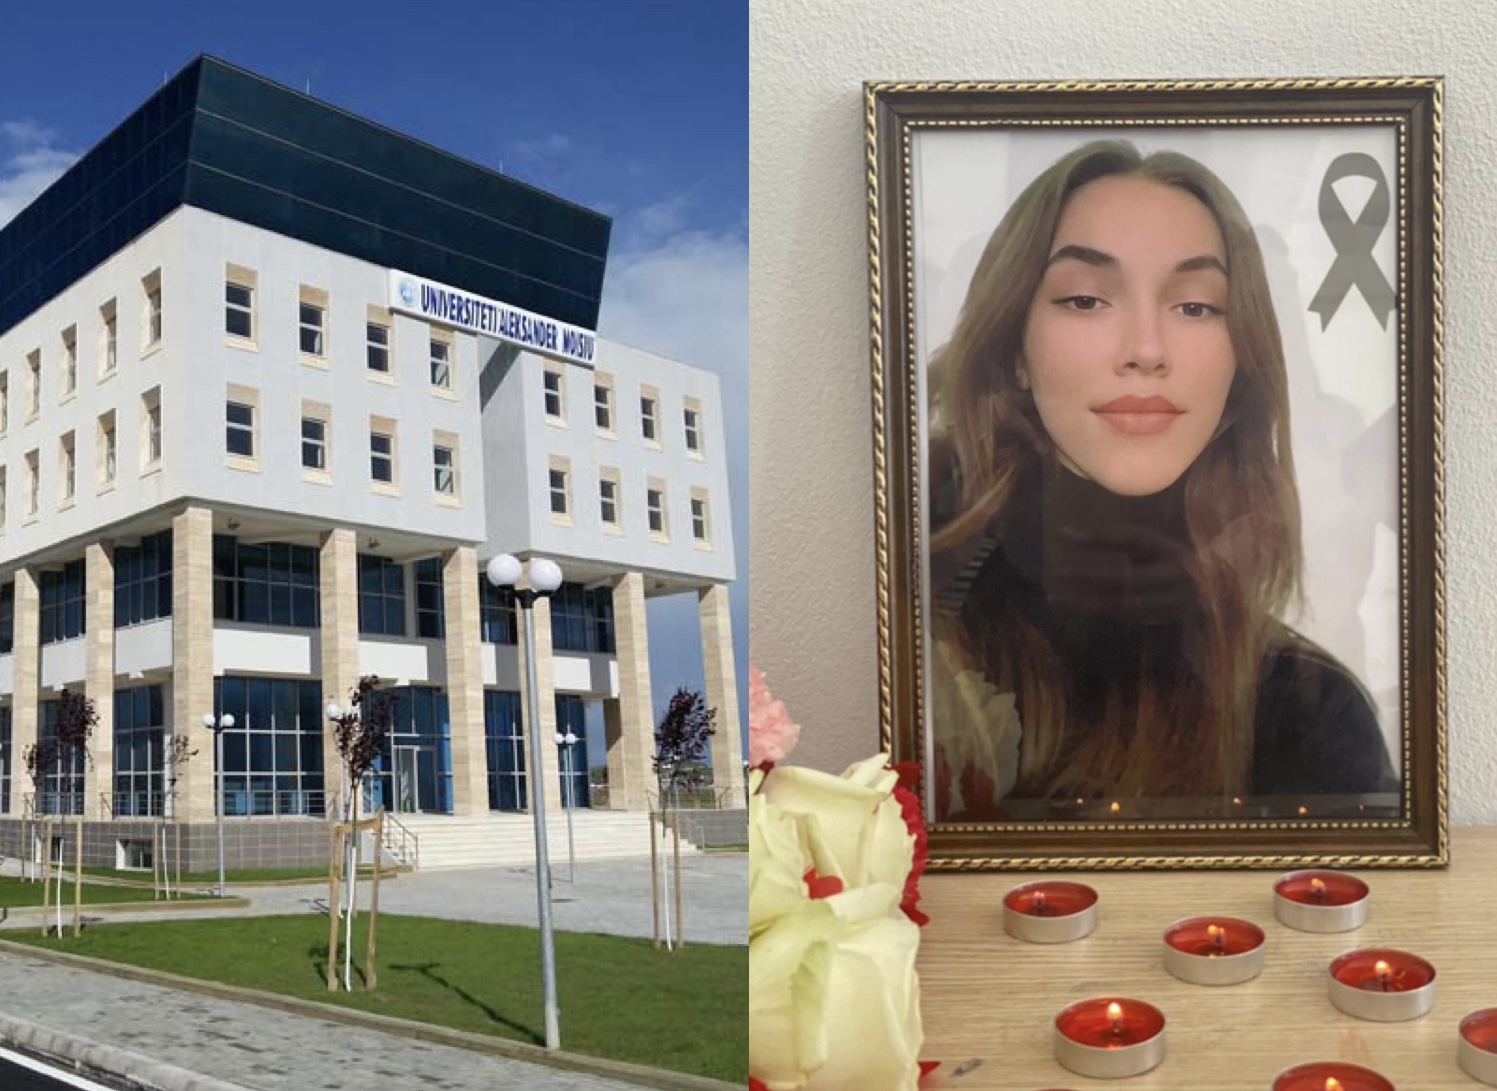 Vdekja e 19-vjeçares në Fushë-Arrëz, Universiteti i Durrësit: Të tronditur për humbjen e një studenteje të shkëlqyer